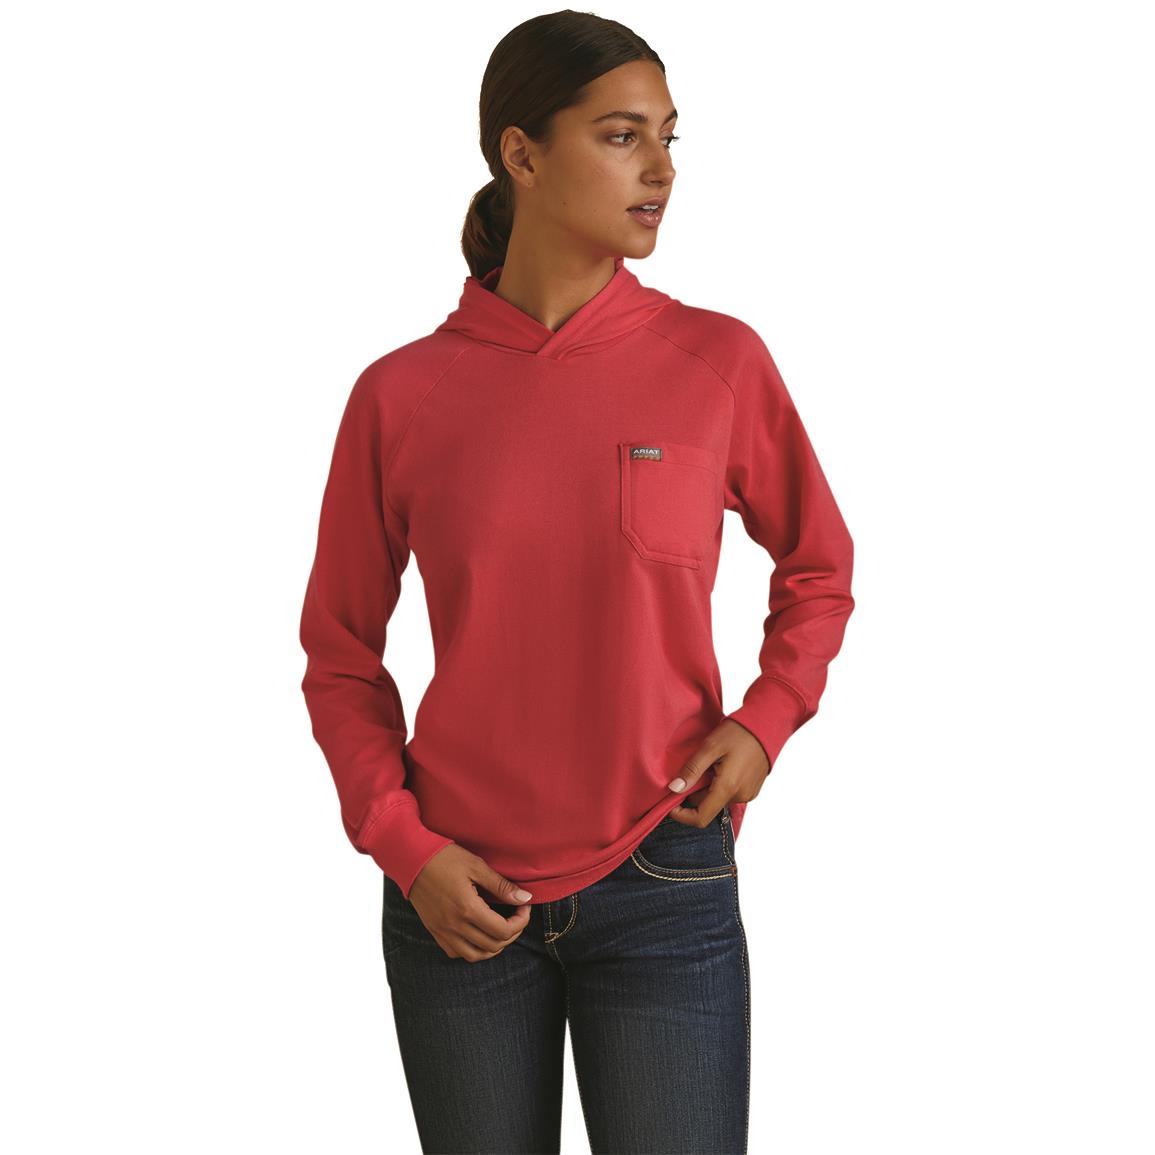 Ariat Women's Rebar CottonStrong Hooded T-Shirt, Teaberry